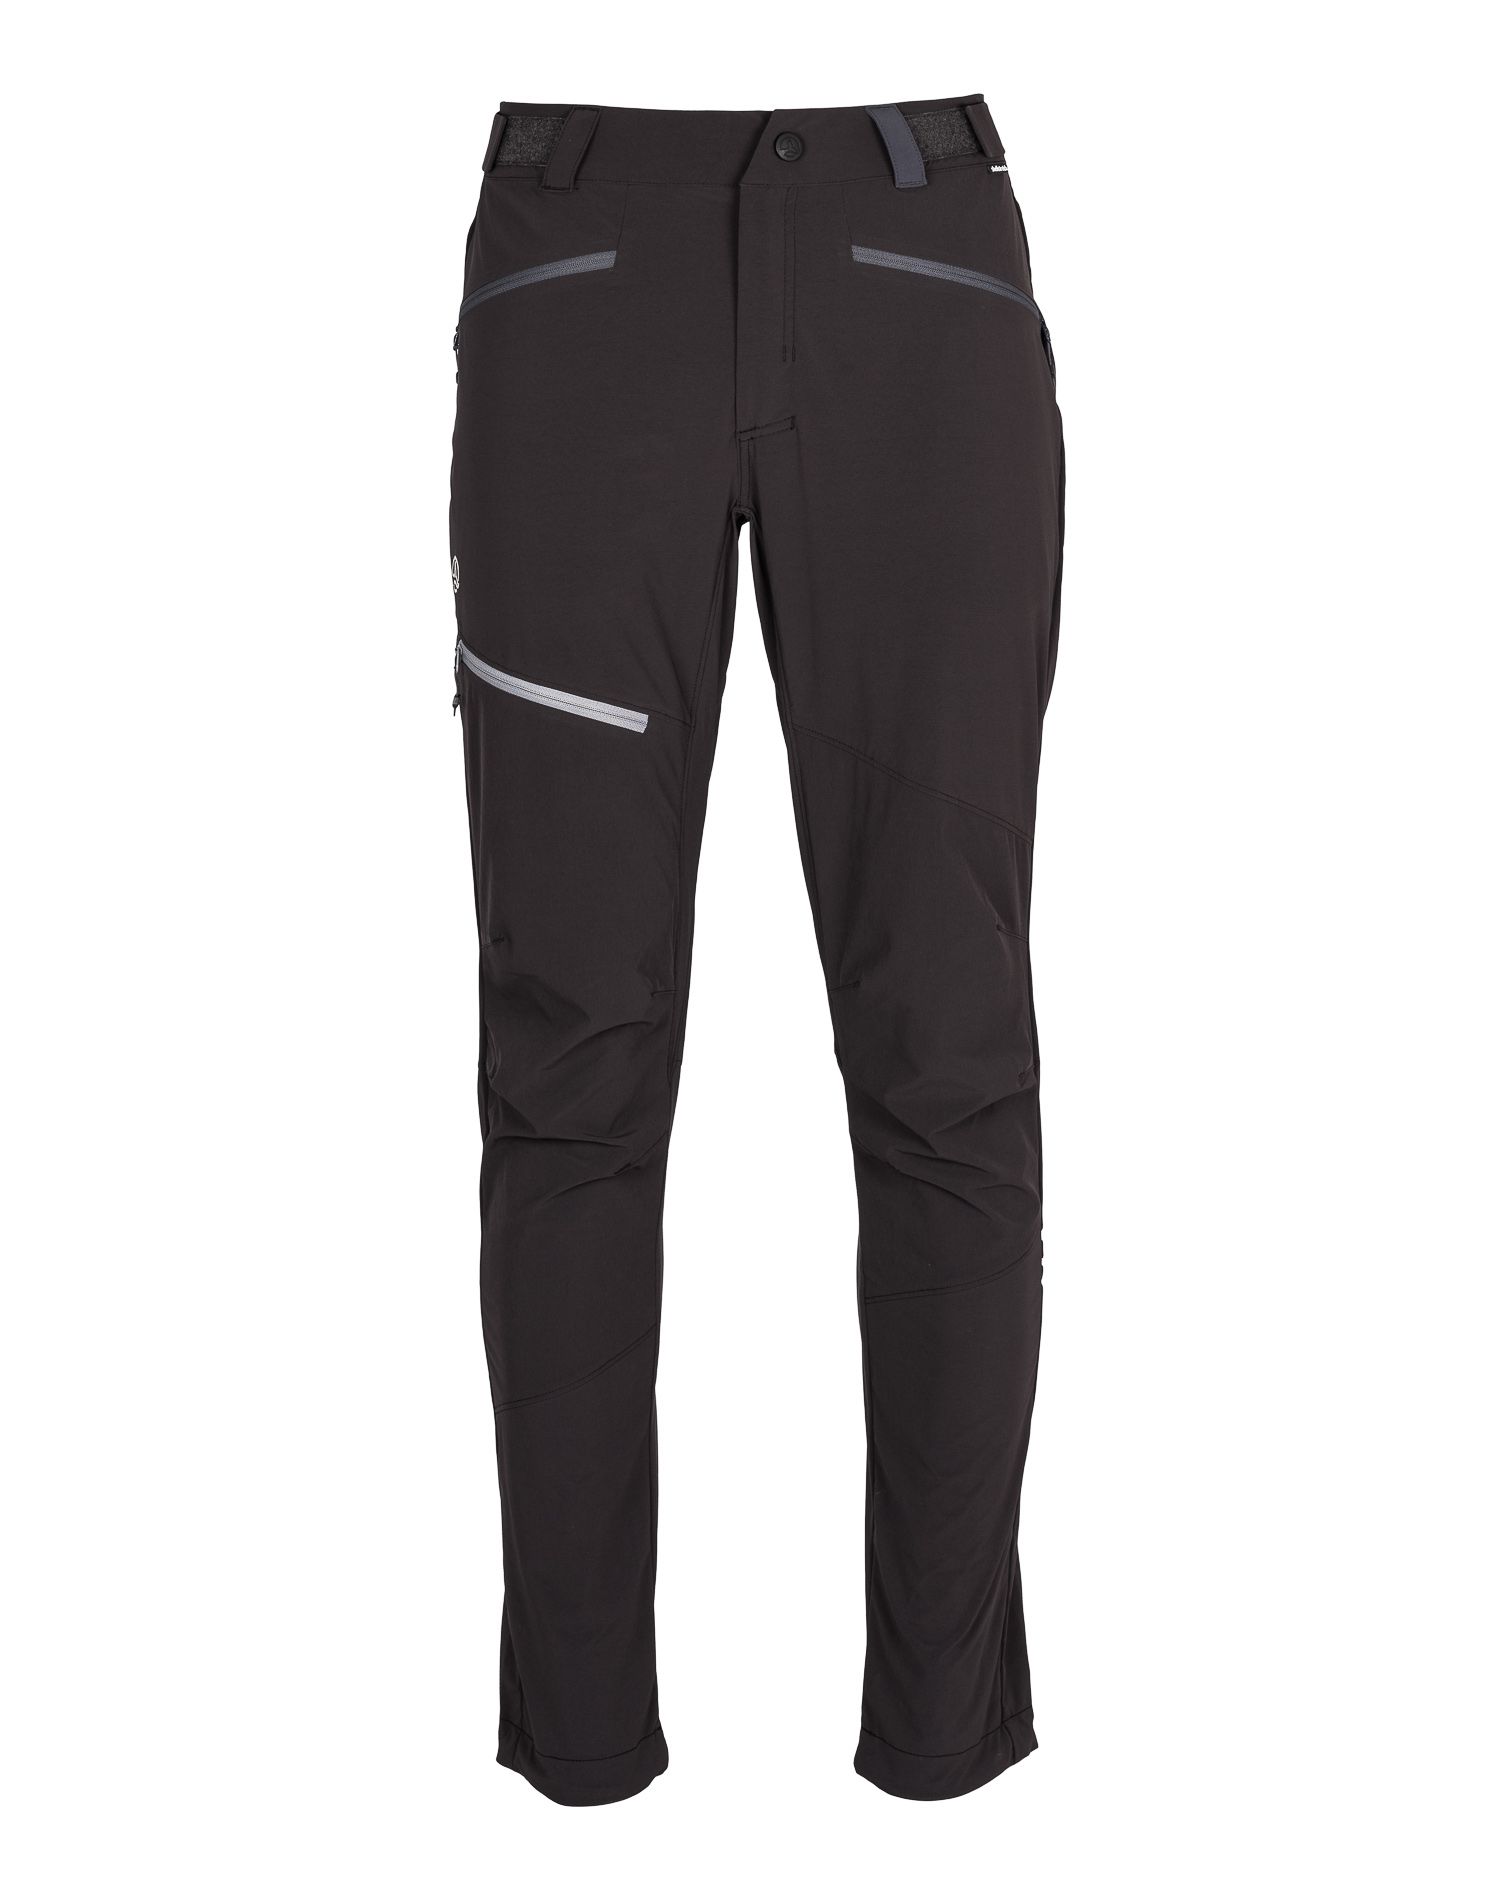 Спортивные брюки мужские Ternua Rotor Pt M черные S